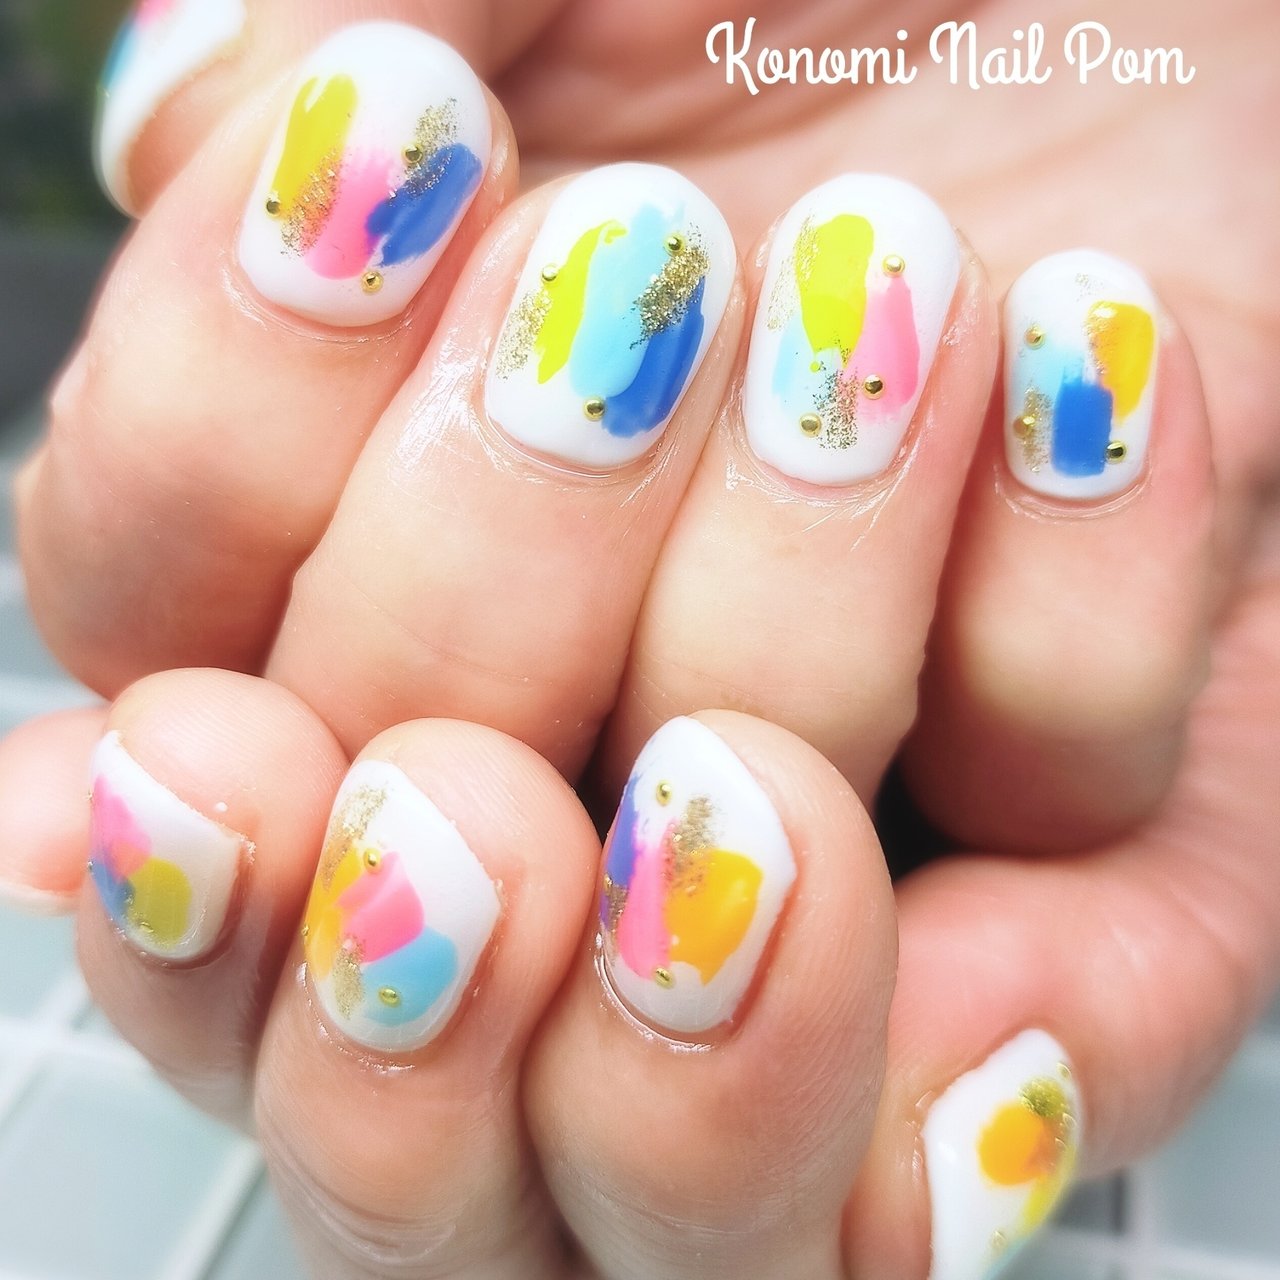 夏 旅行 リゾート 女子会 ハンド Nail Salon Pomのネイルデザイン No ネイルブック